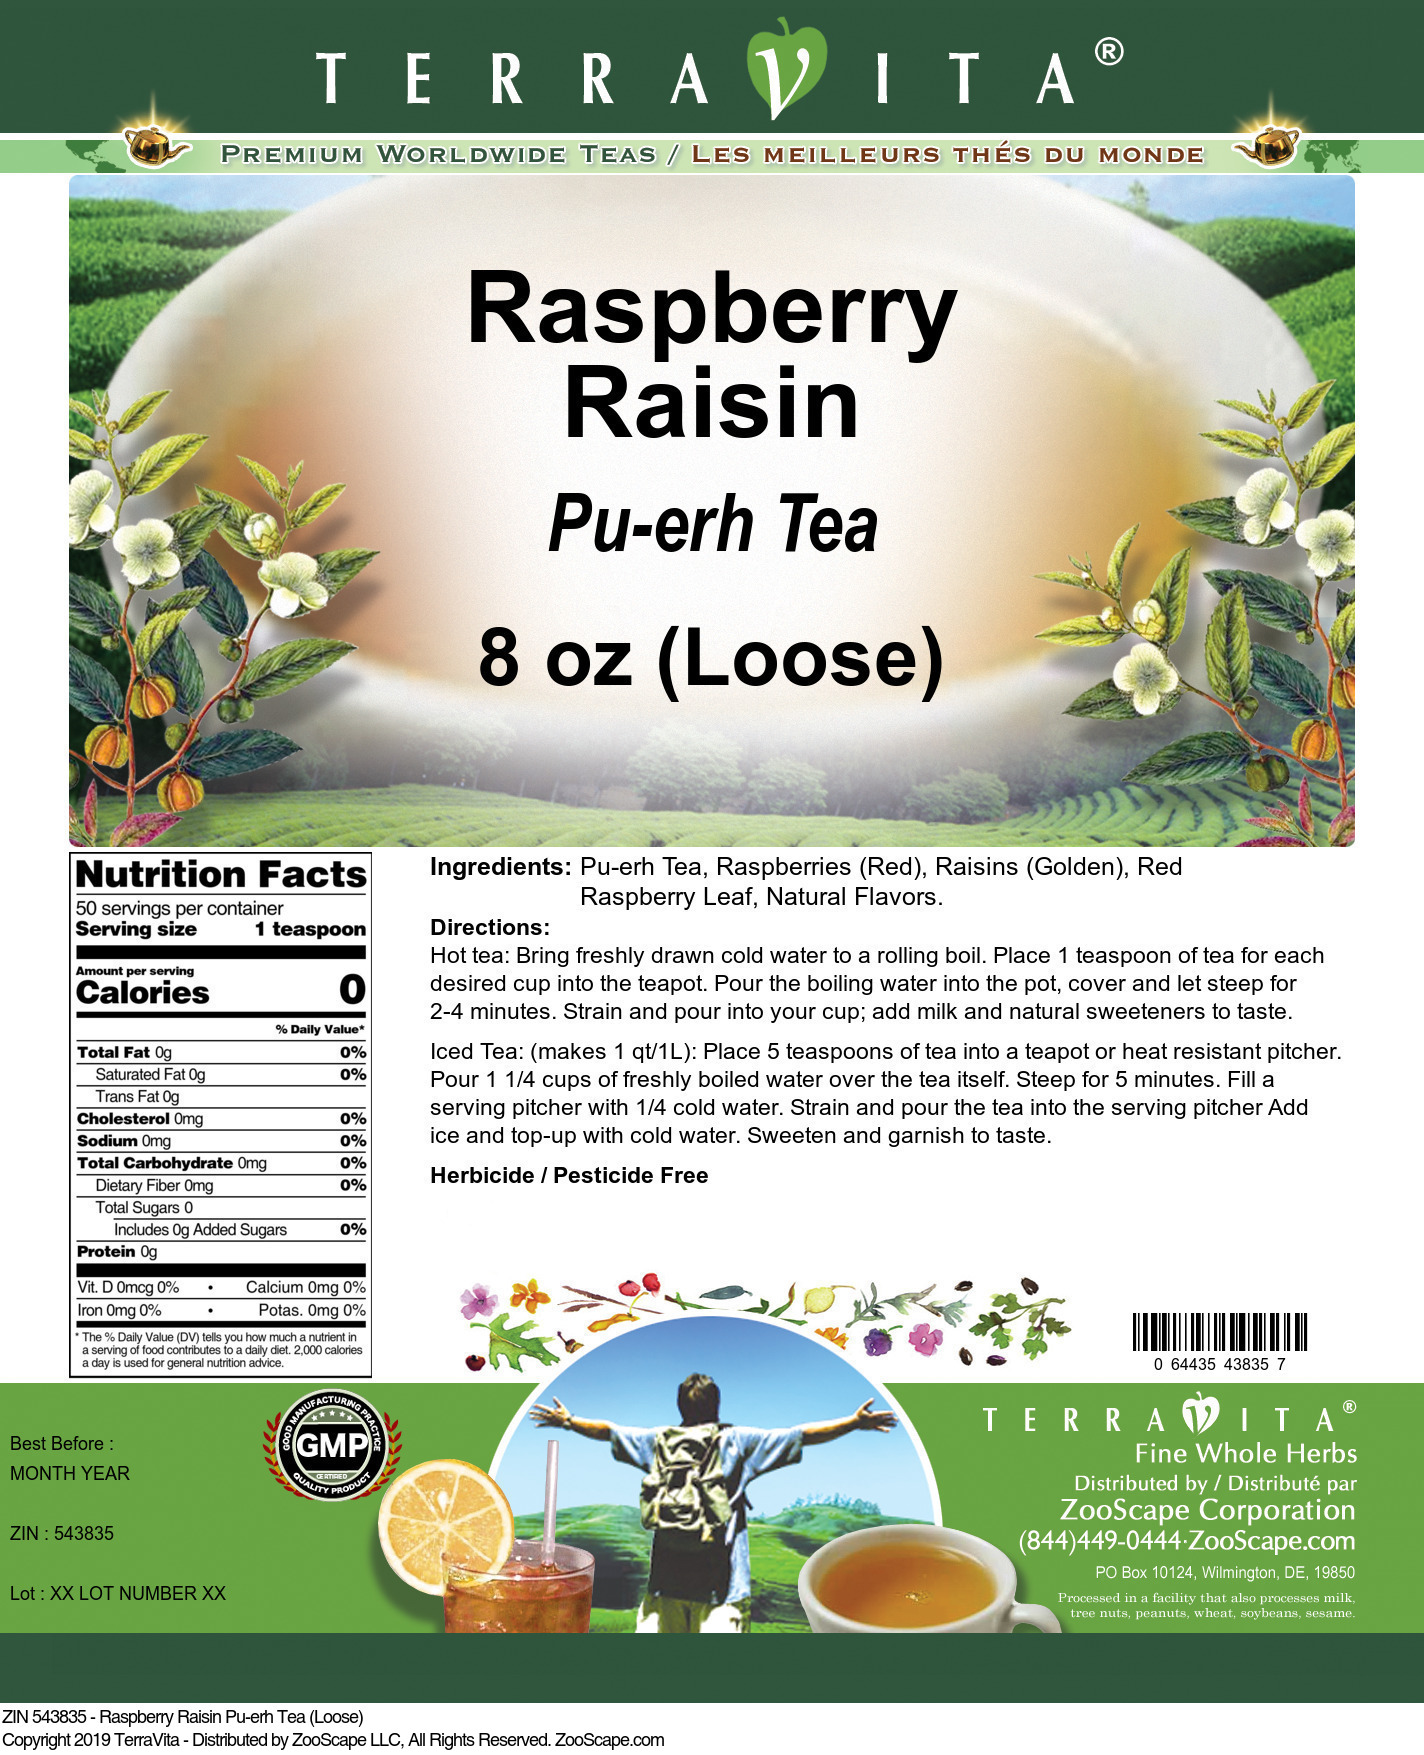 Raspberry Raisin Pu-erh Tea (Loose) - Label